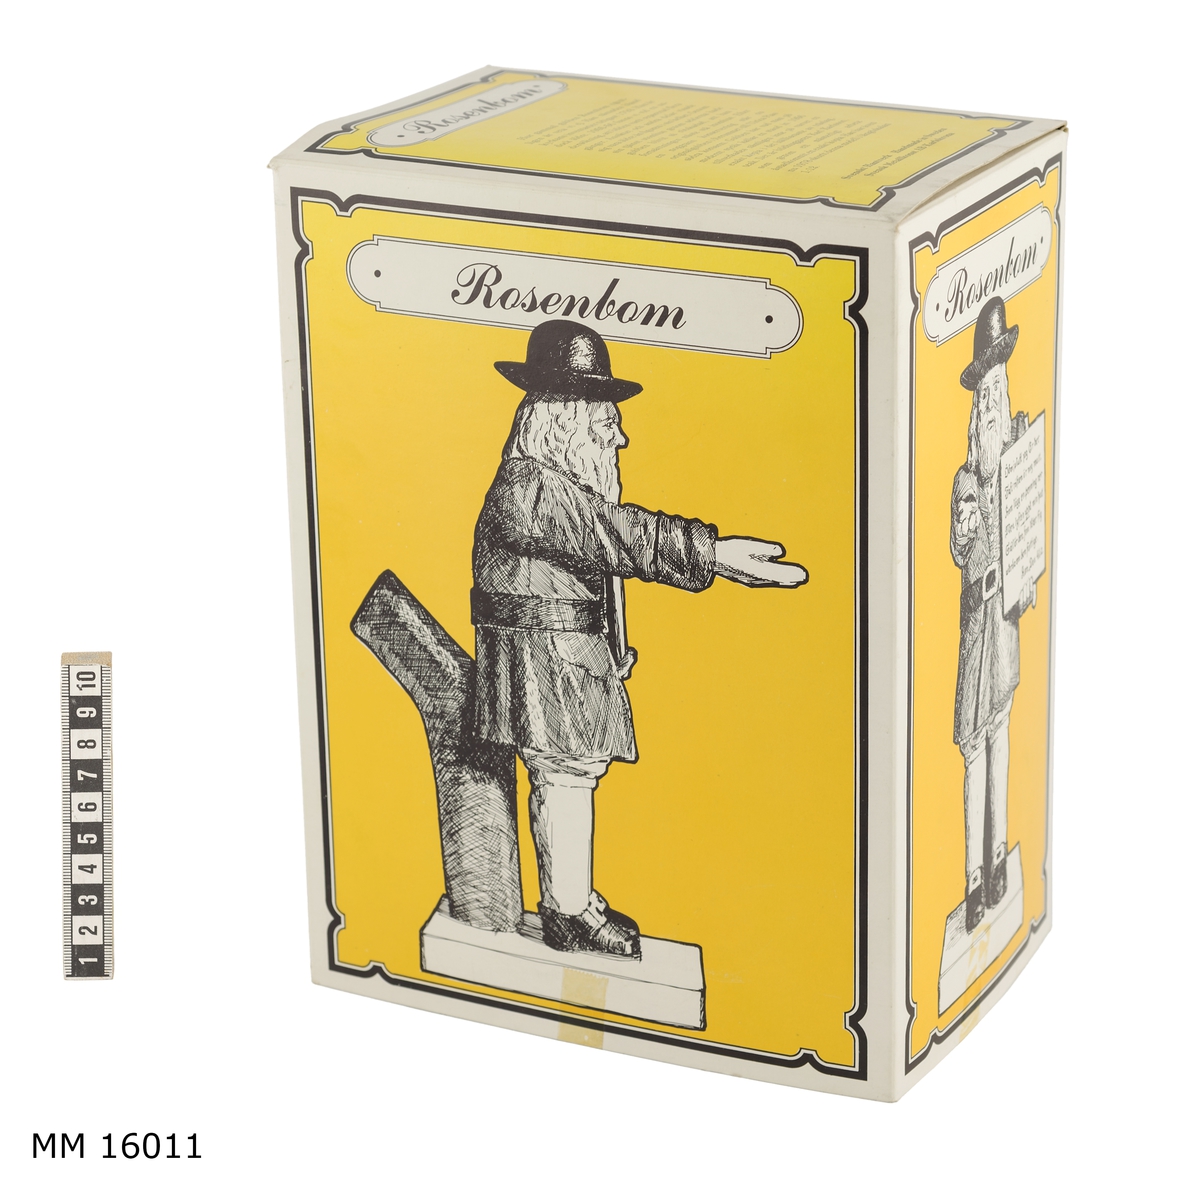 Gjuten modell av gubben Rosenbom i skala 1:12.

På grå sockel och vilande mot en trästock, står i 1750-talskläder, helfigur, en man med utsträckt högerarm. Tiggarpåsen på högra axel med ett textplakat i handen. Ansiktet vänt rakt framåt. Kläderna består av: svarta skor med gula spännen, grå strumpor, gula knäbyxor, rödbrun lårlång rock med svart bälte och gult spänne. Svart stor hatt med bälte. Axellångt hår och skägg är grått.